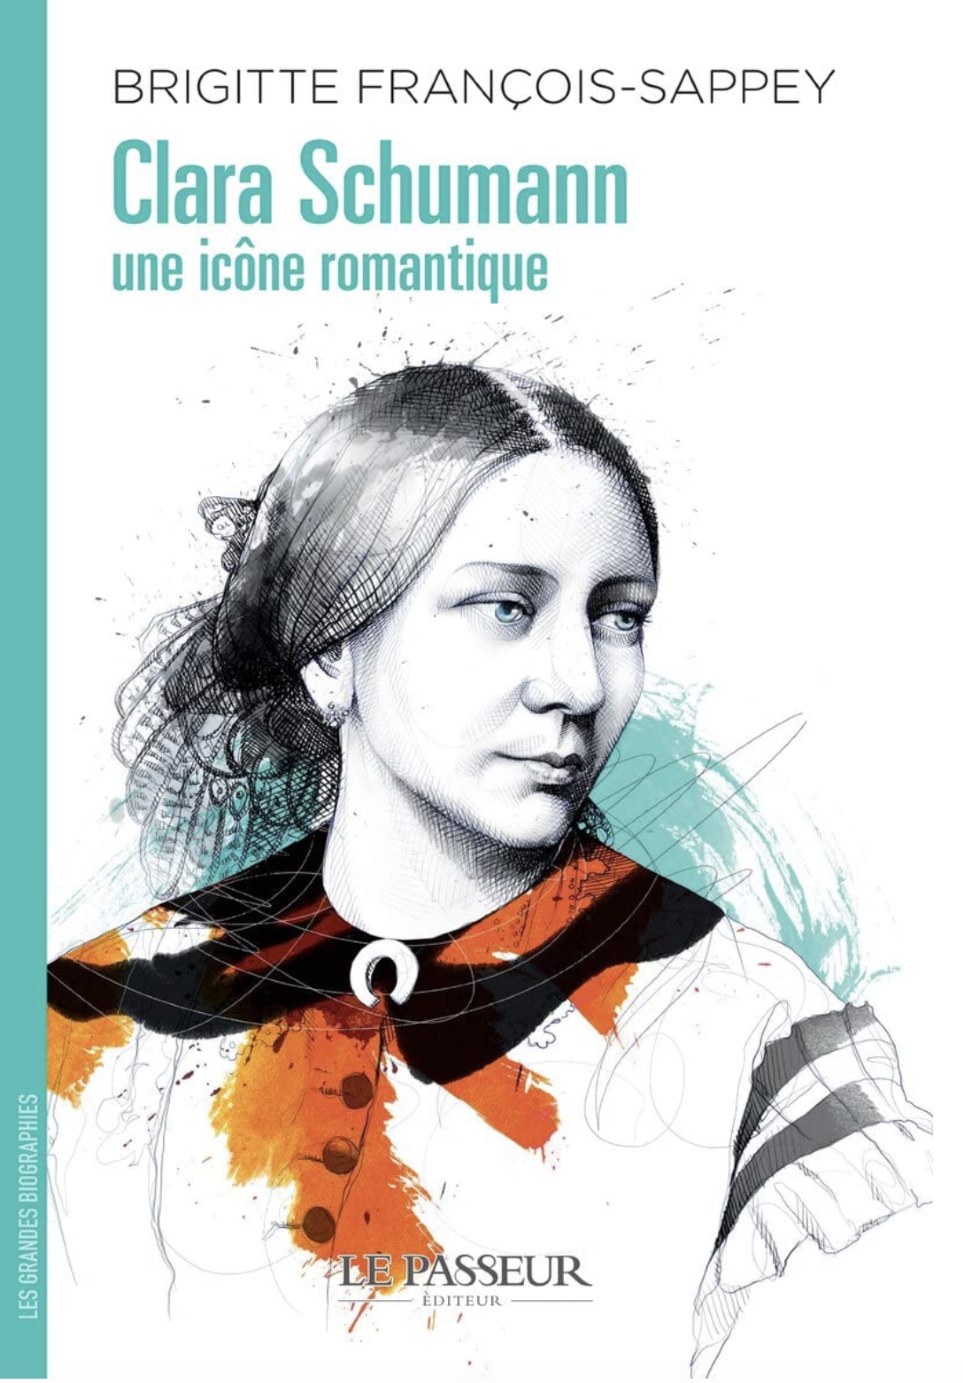 Clara Schumann, une icne romantique, de Brigitte Francois-Sappey